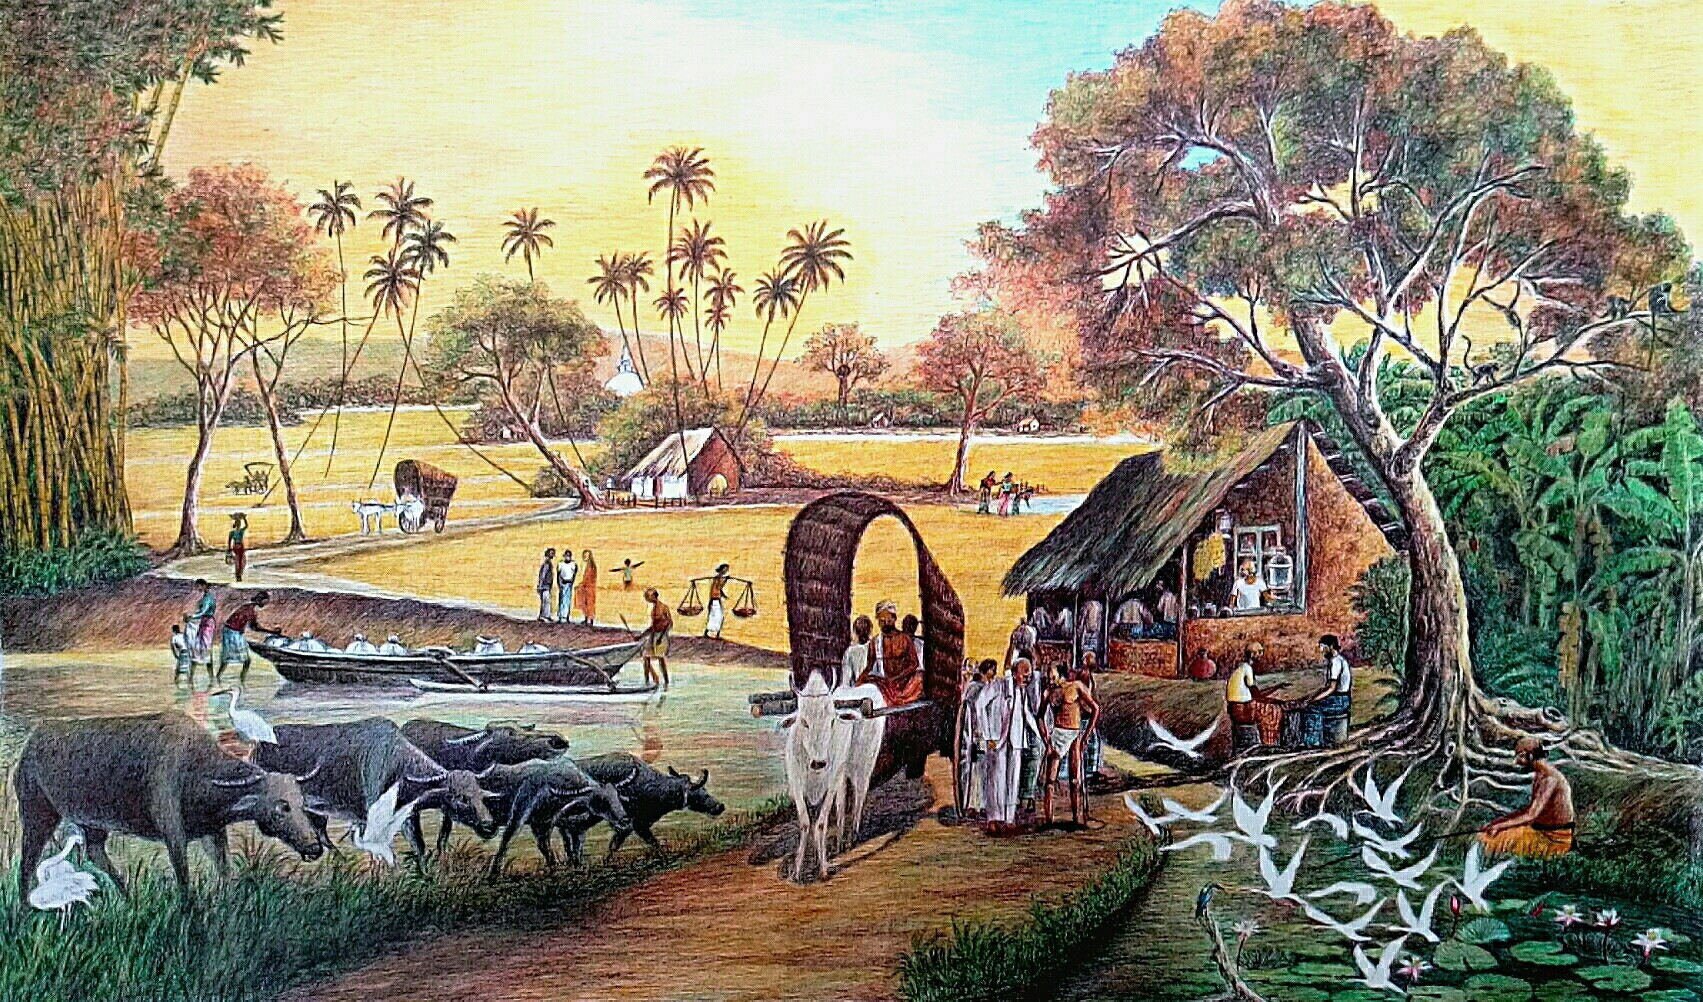 Village by Mangala Madanayake